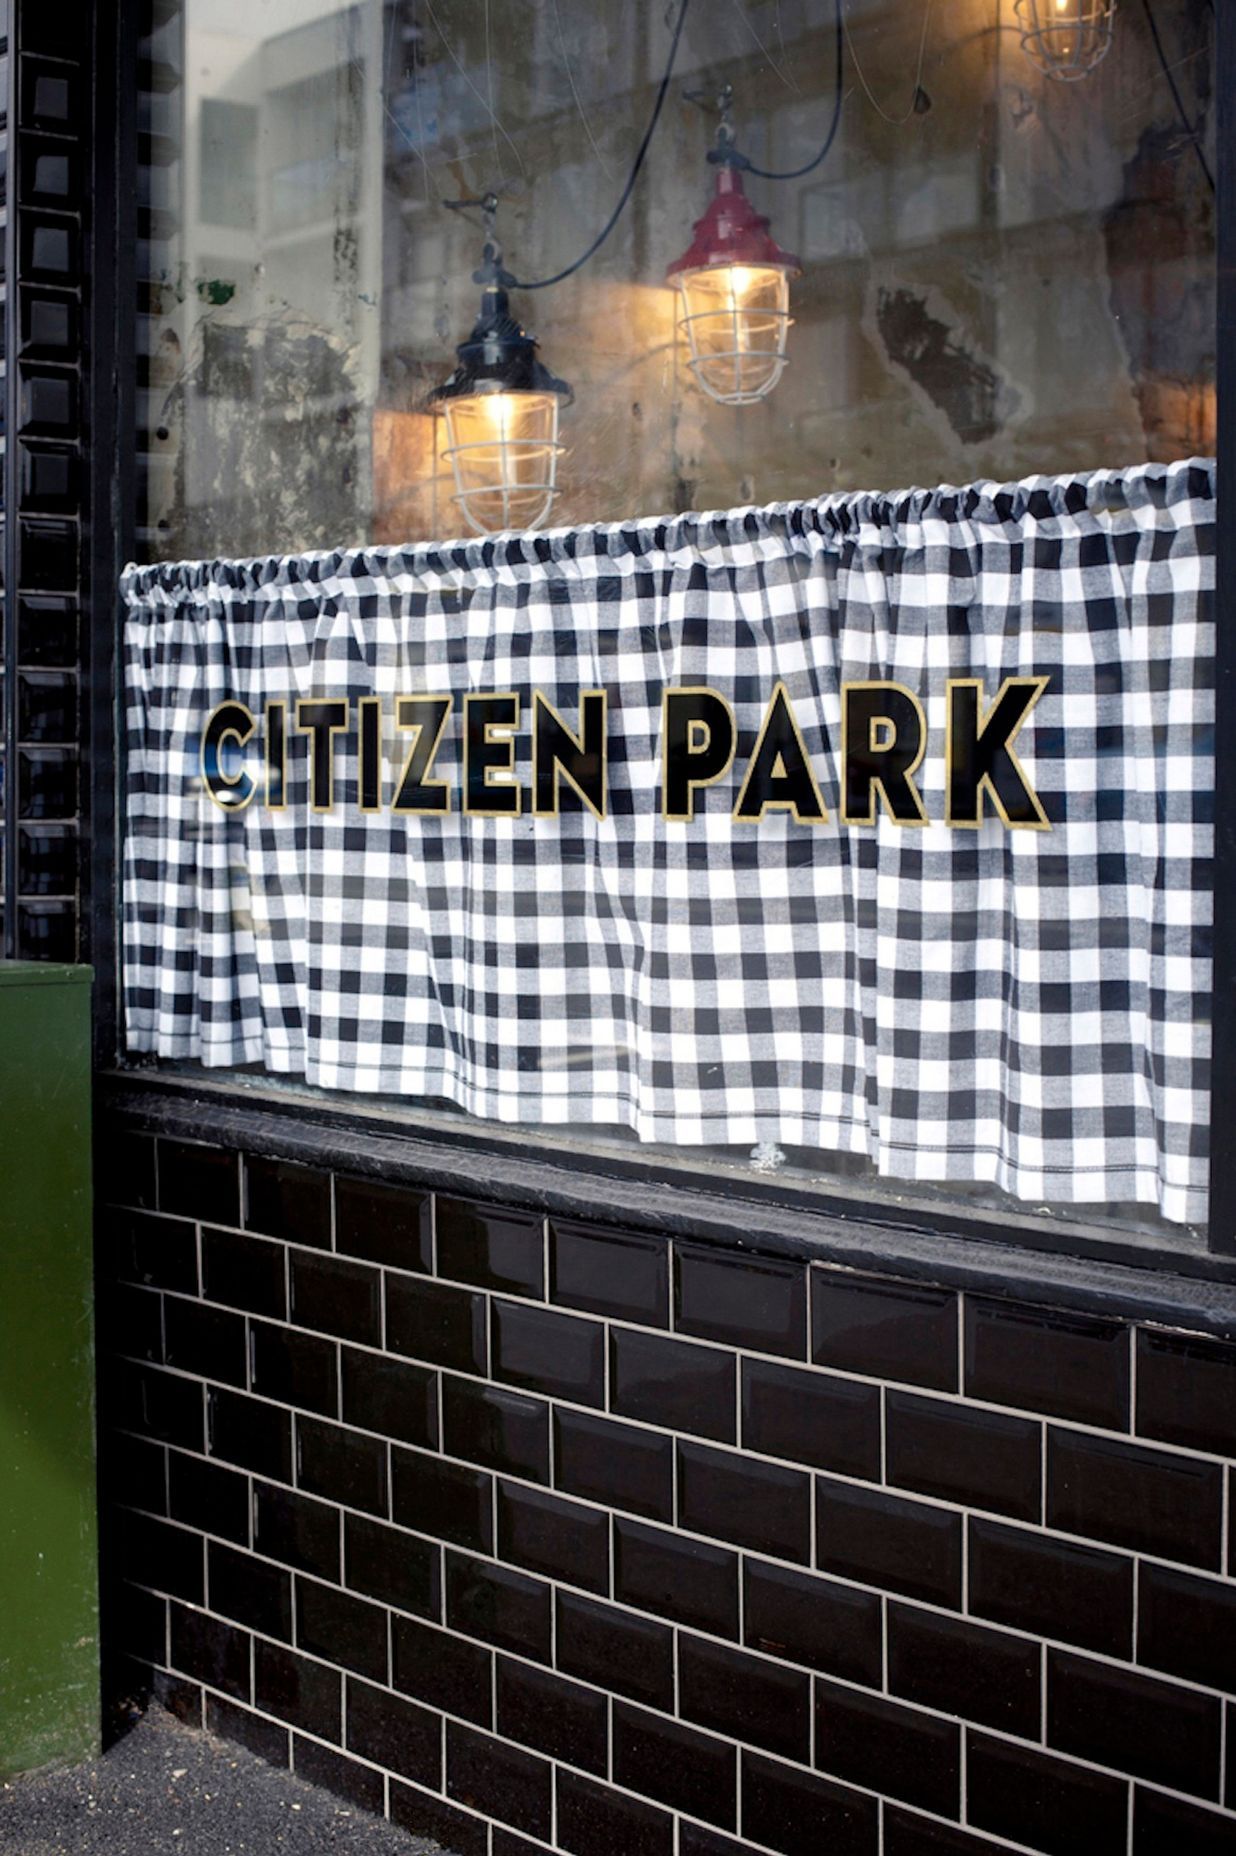 Citizen Park